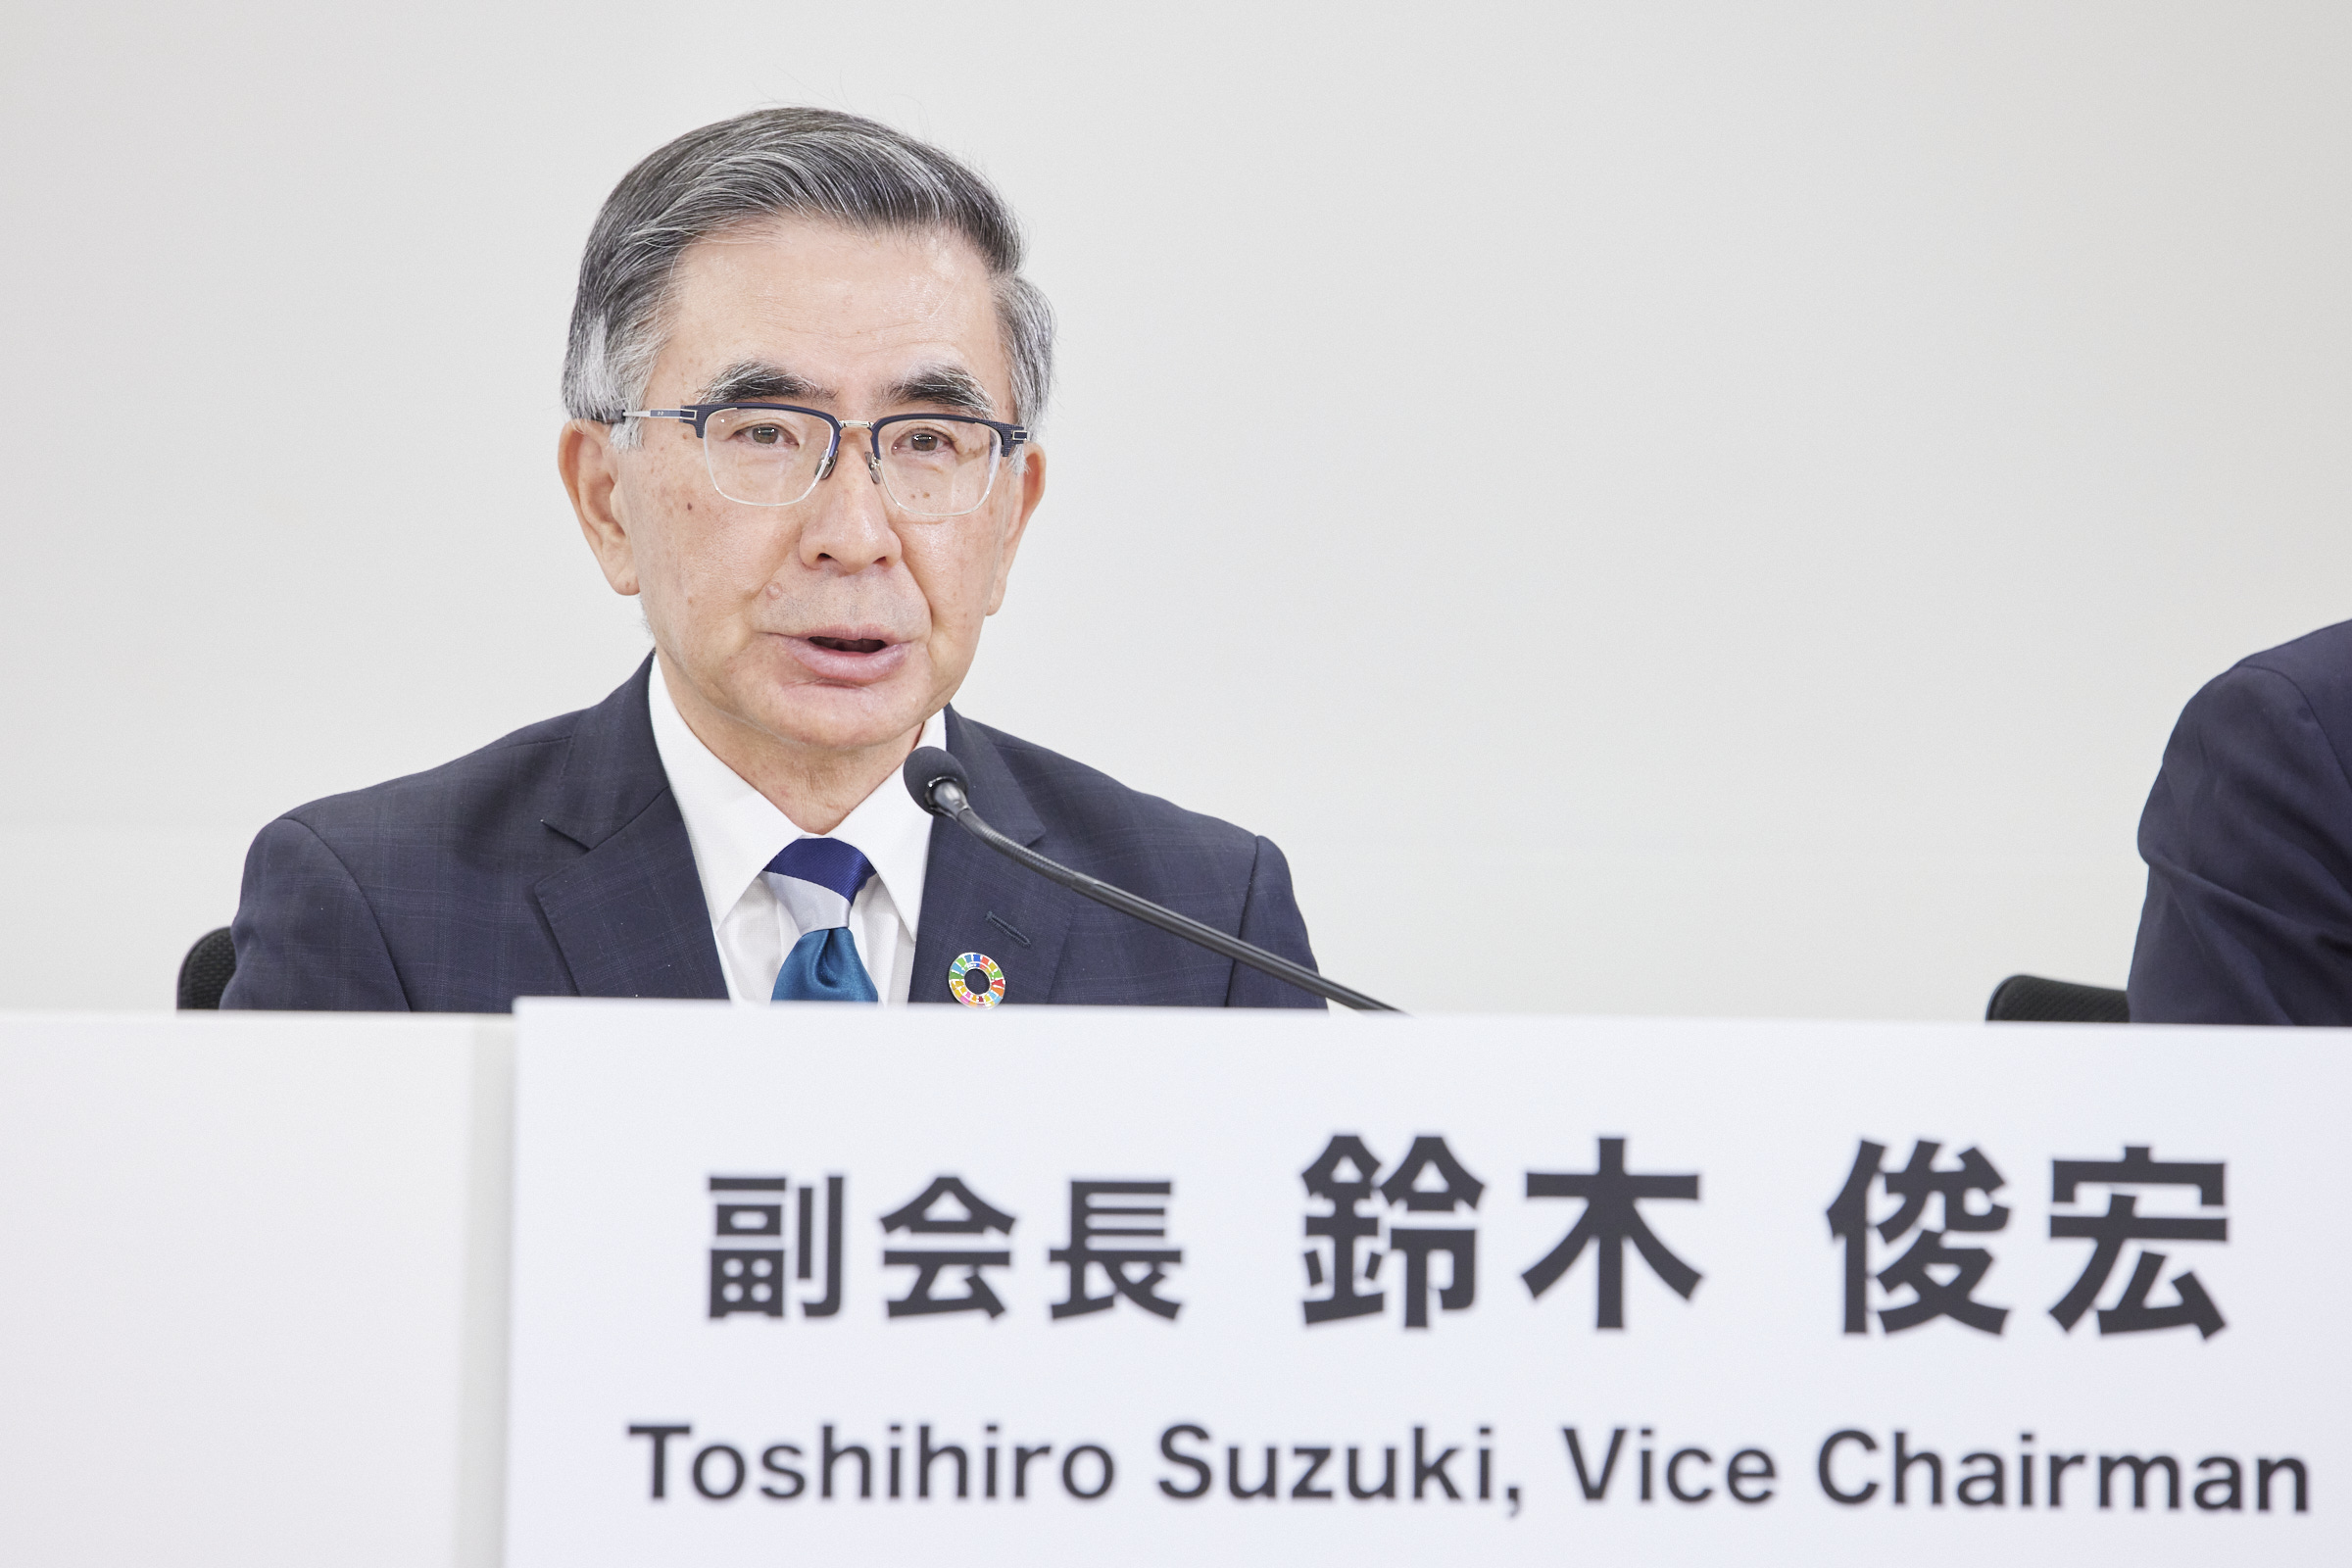 SUZUKI Toshihiro, Vice Chairman (Representative Director and President, Suzuki Motor Corp.) 